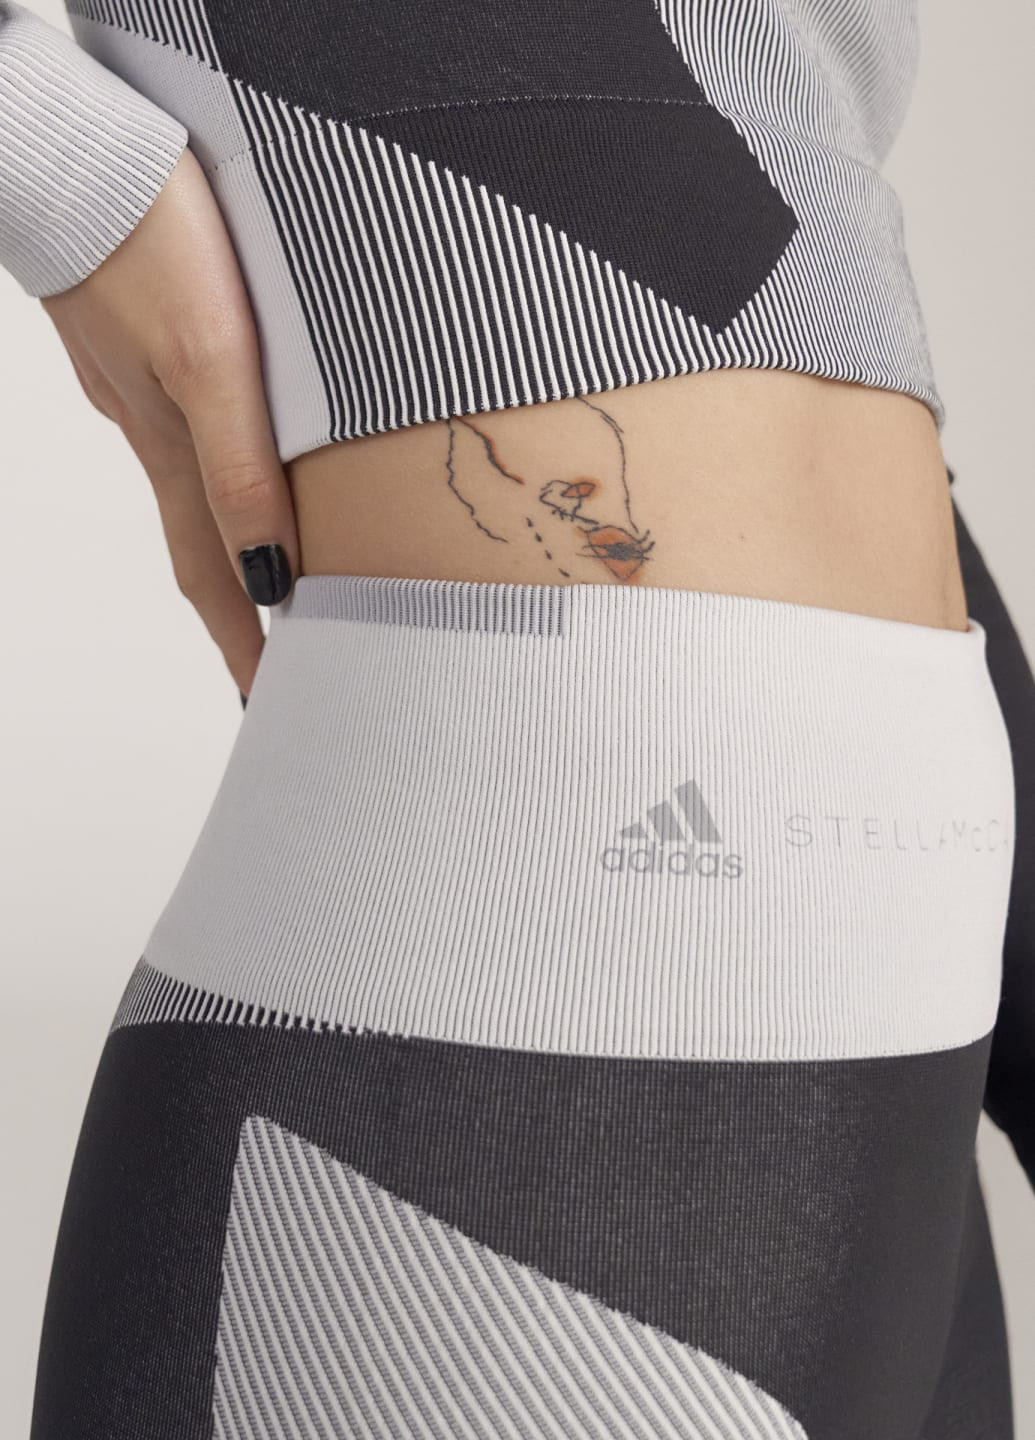 Черные летние бесшовные шорты для фитнеса by stella mccartney adidas